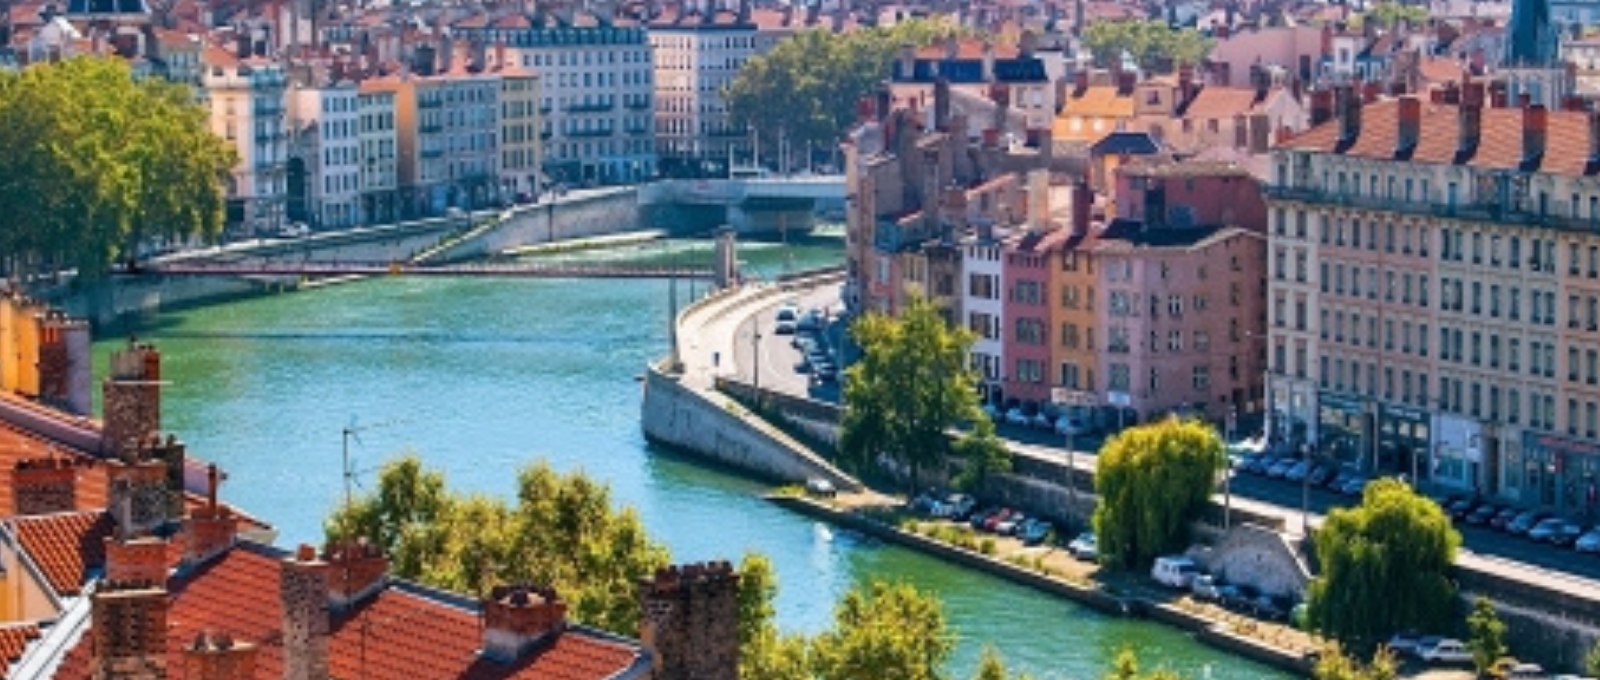 Lyon - tourisme durable